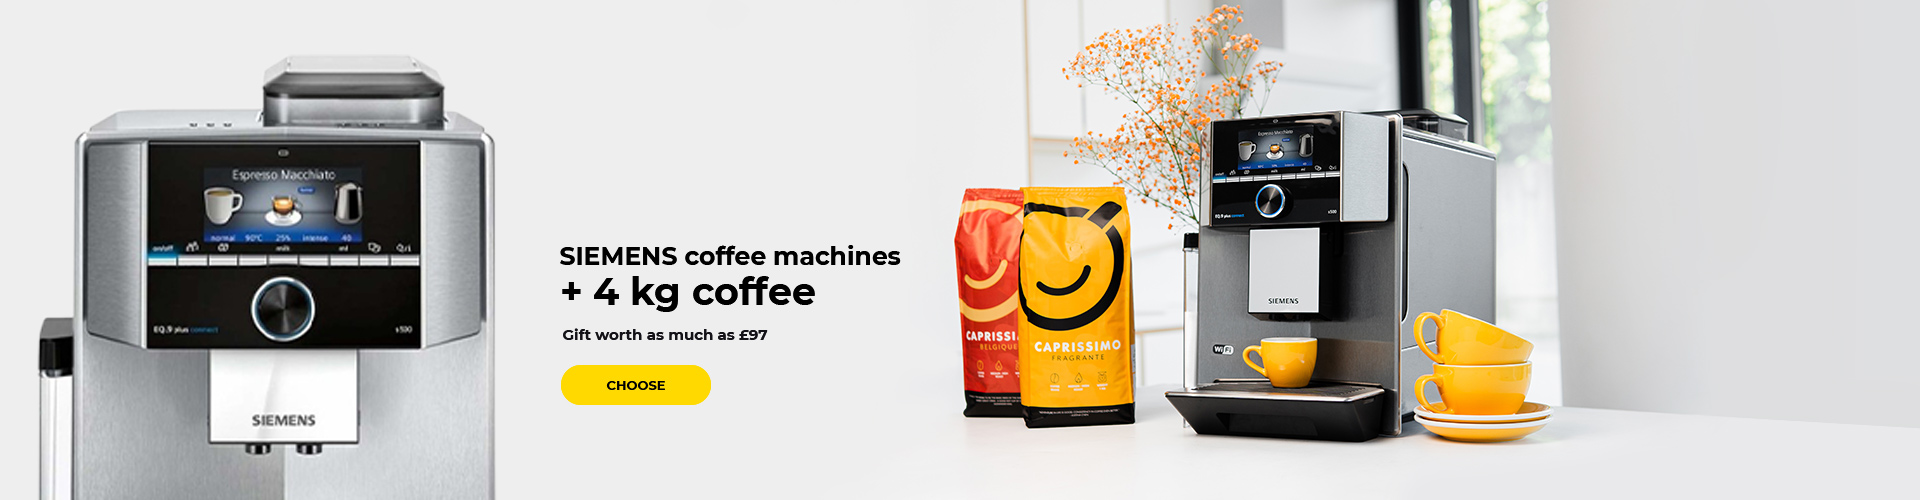 SIEMENS coffee machines + 4 kg of coffee